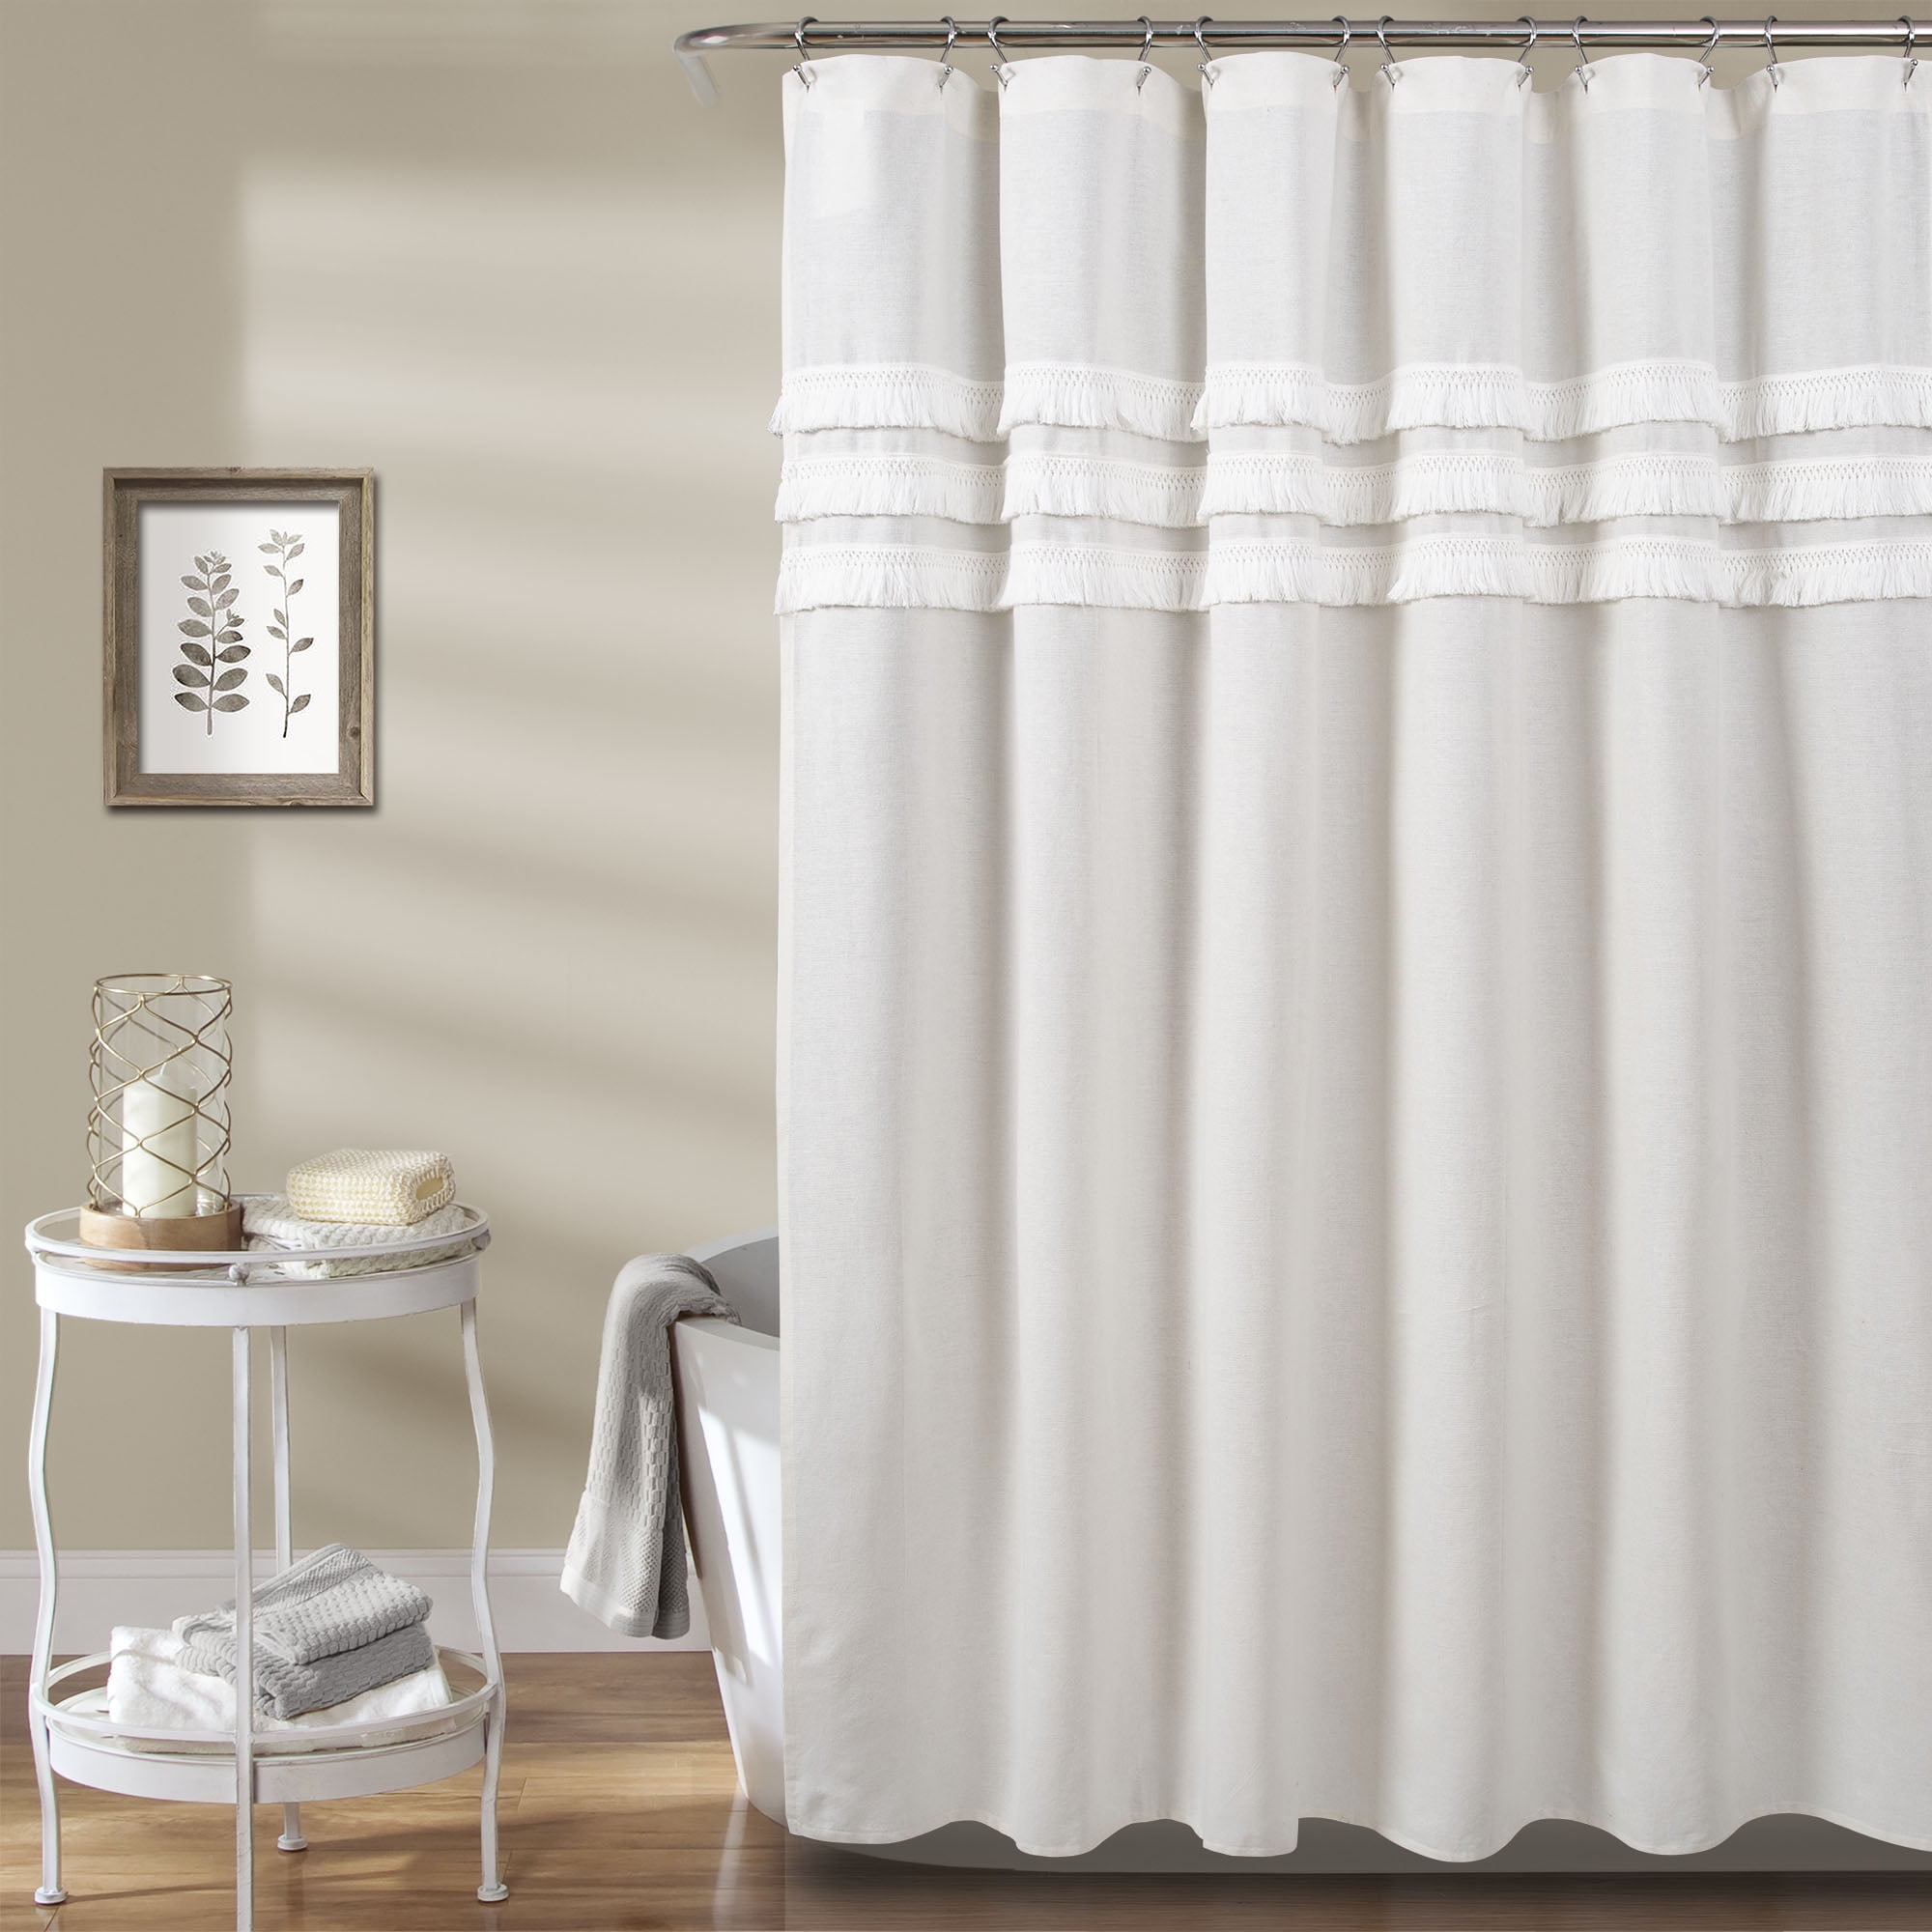 Lush Decor Ciel Tassel Lace Cotton Blend Shower Curtain, 72x72, White ...